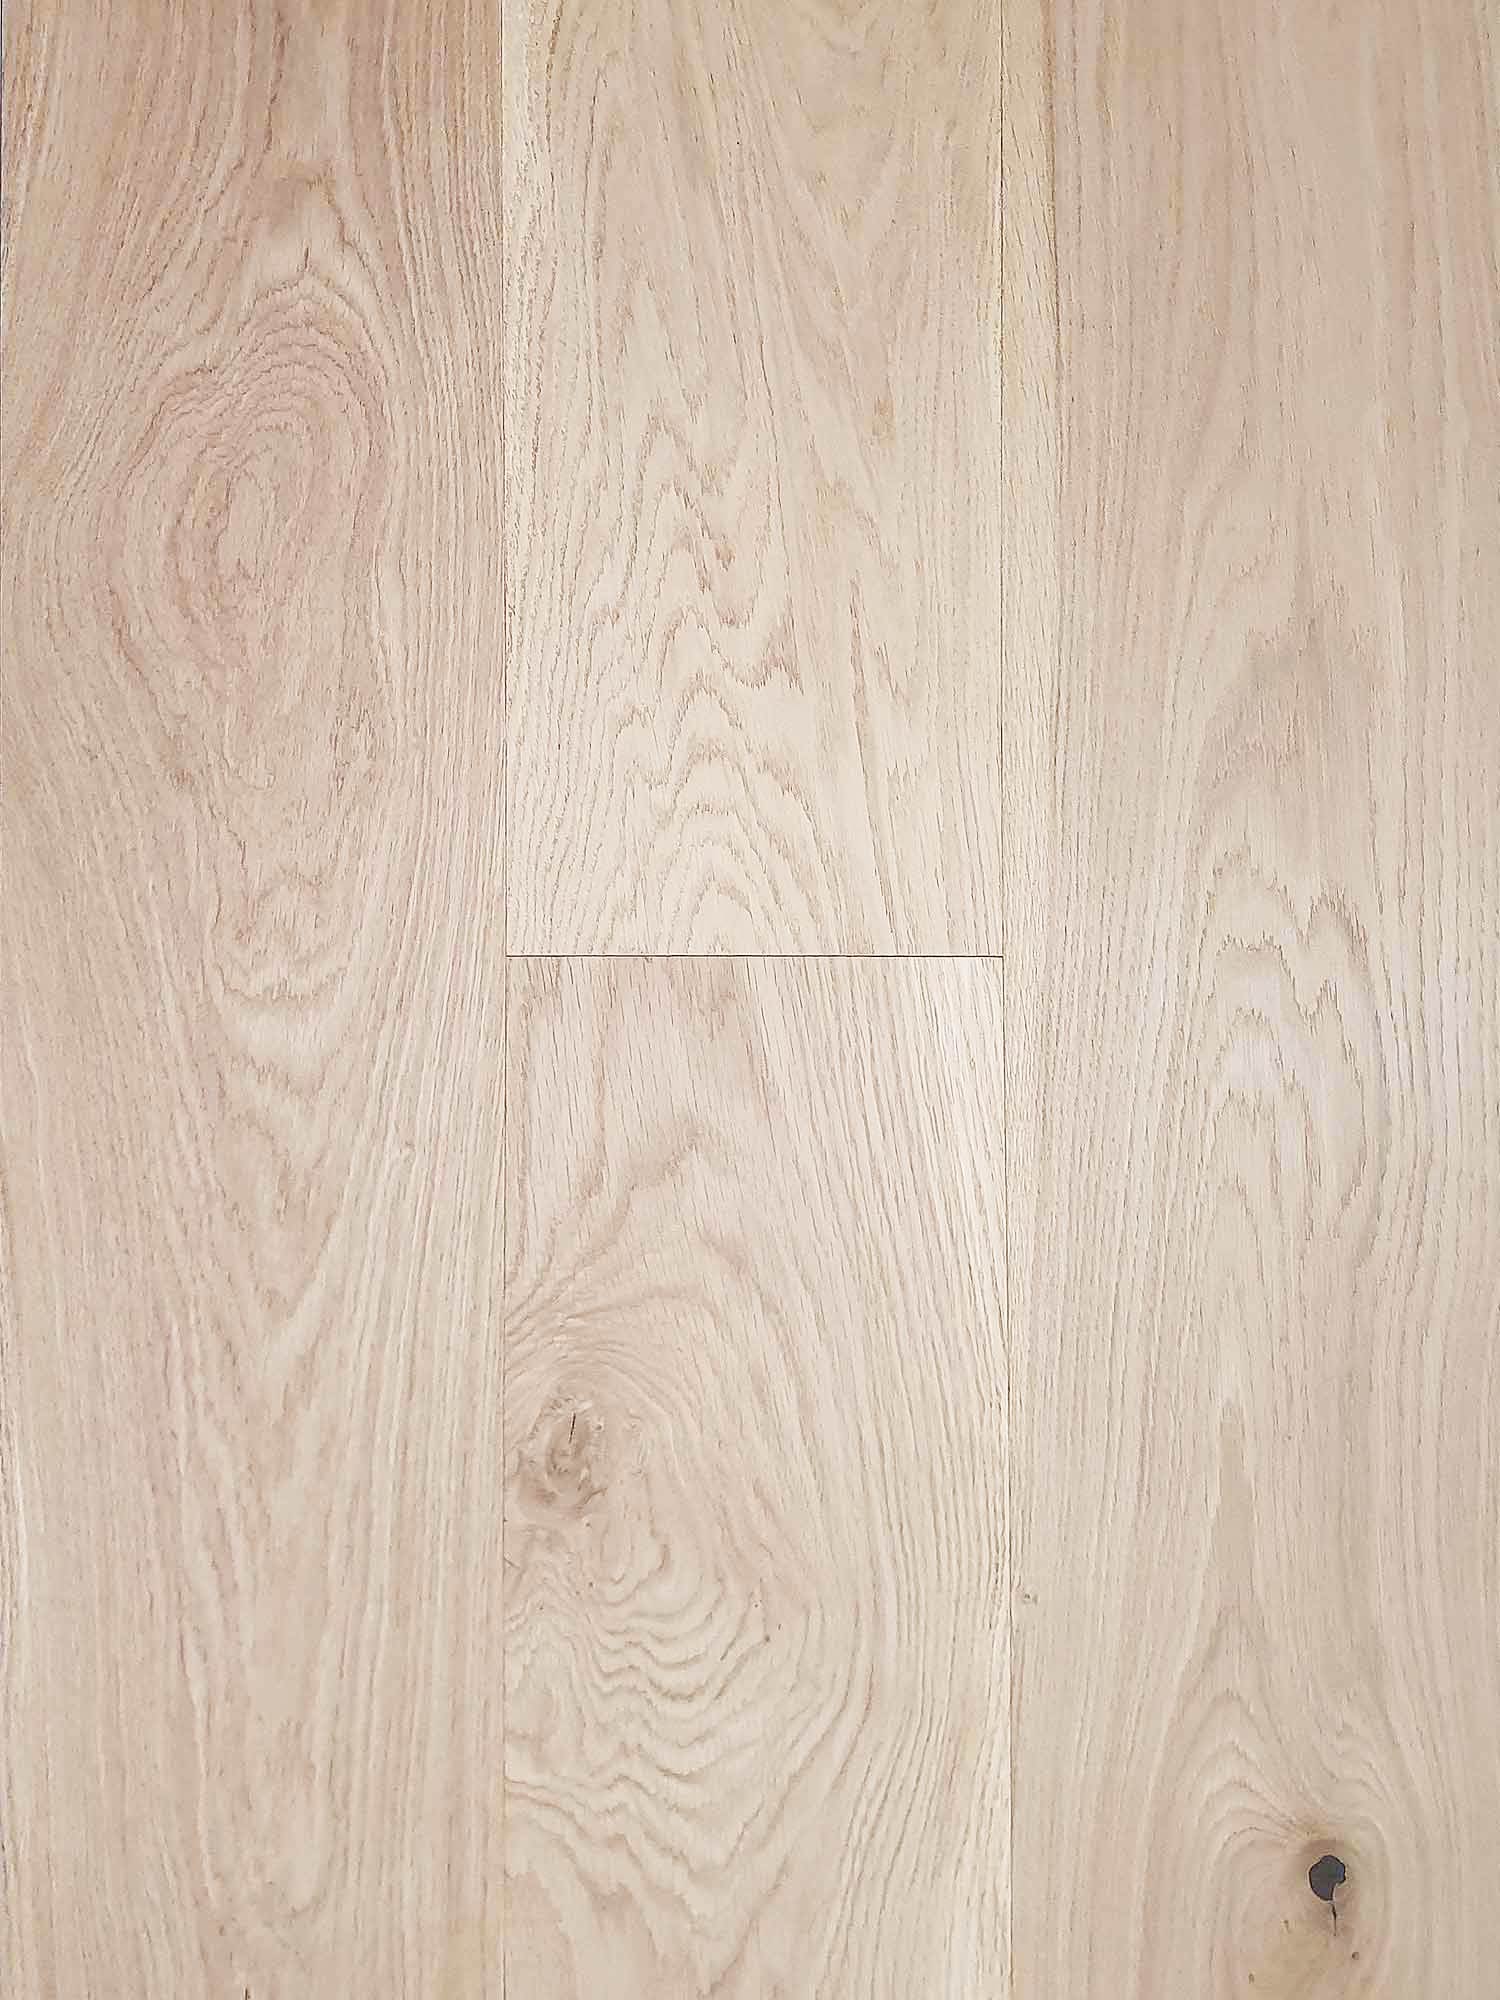 raw oak (unfinished)220mm wide plank | 4mm veneer